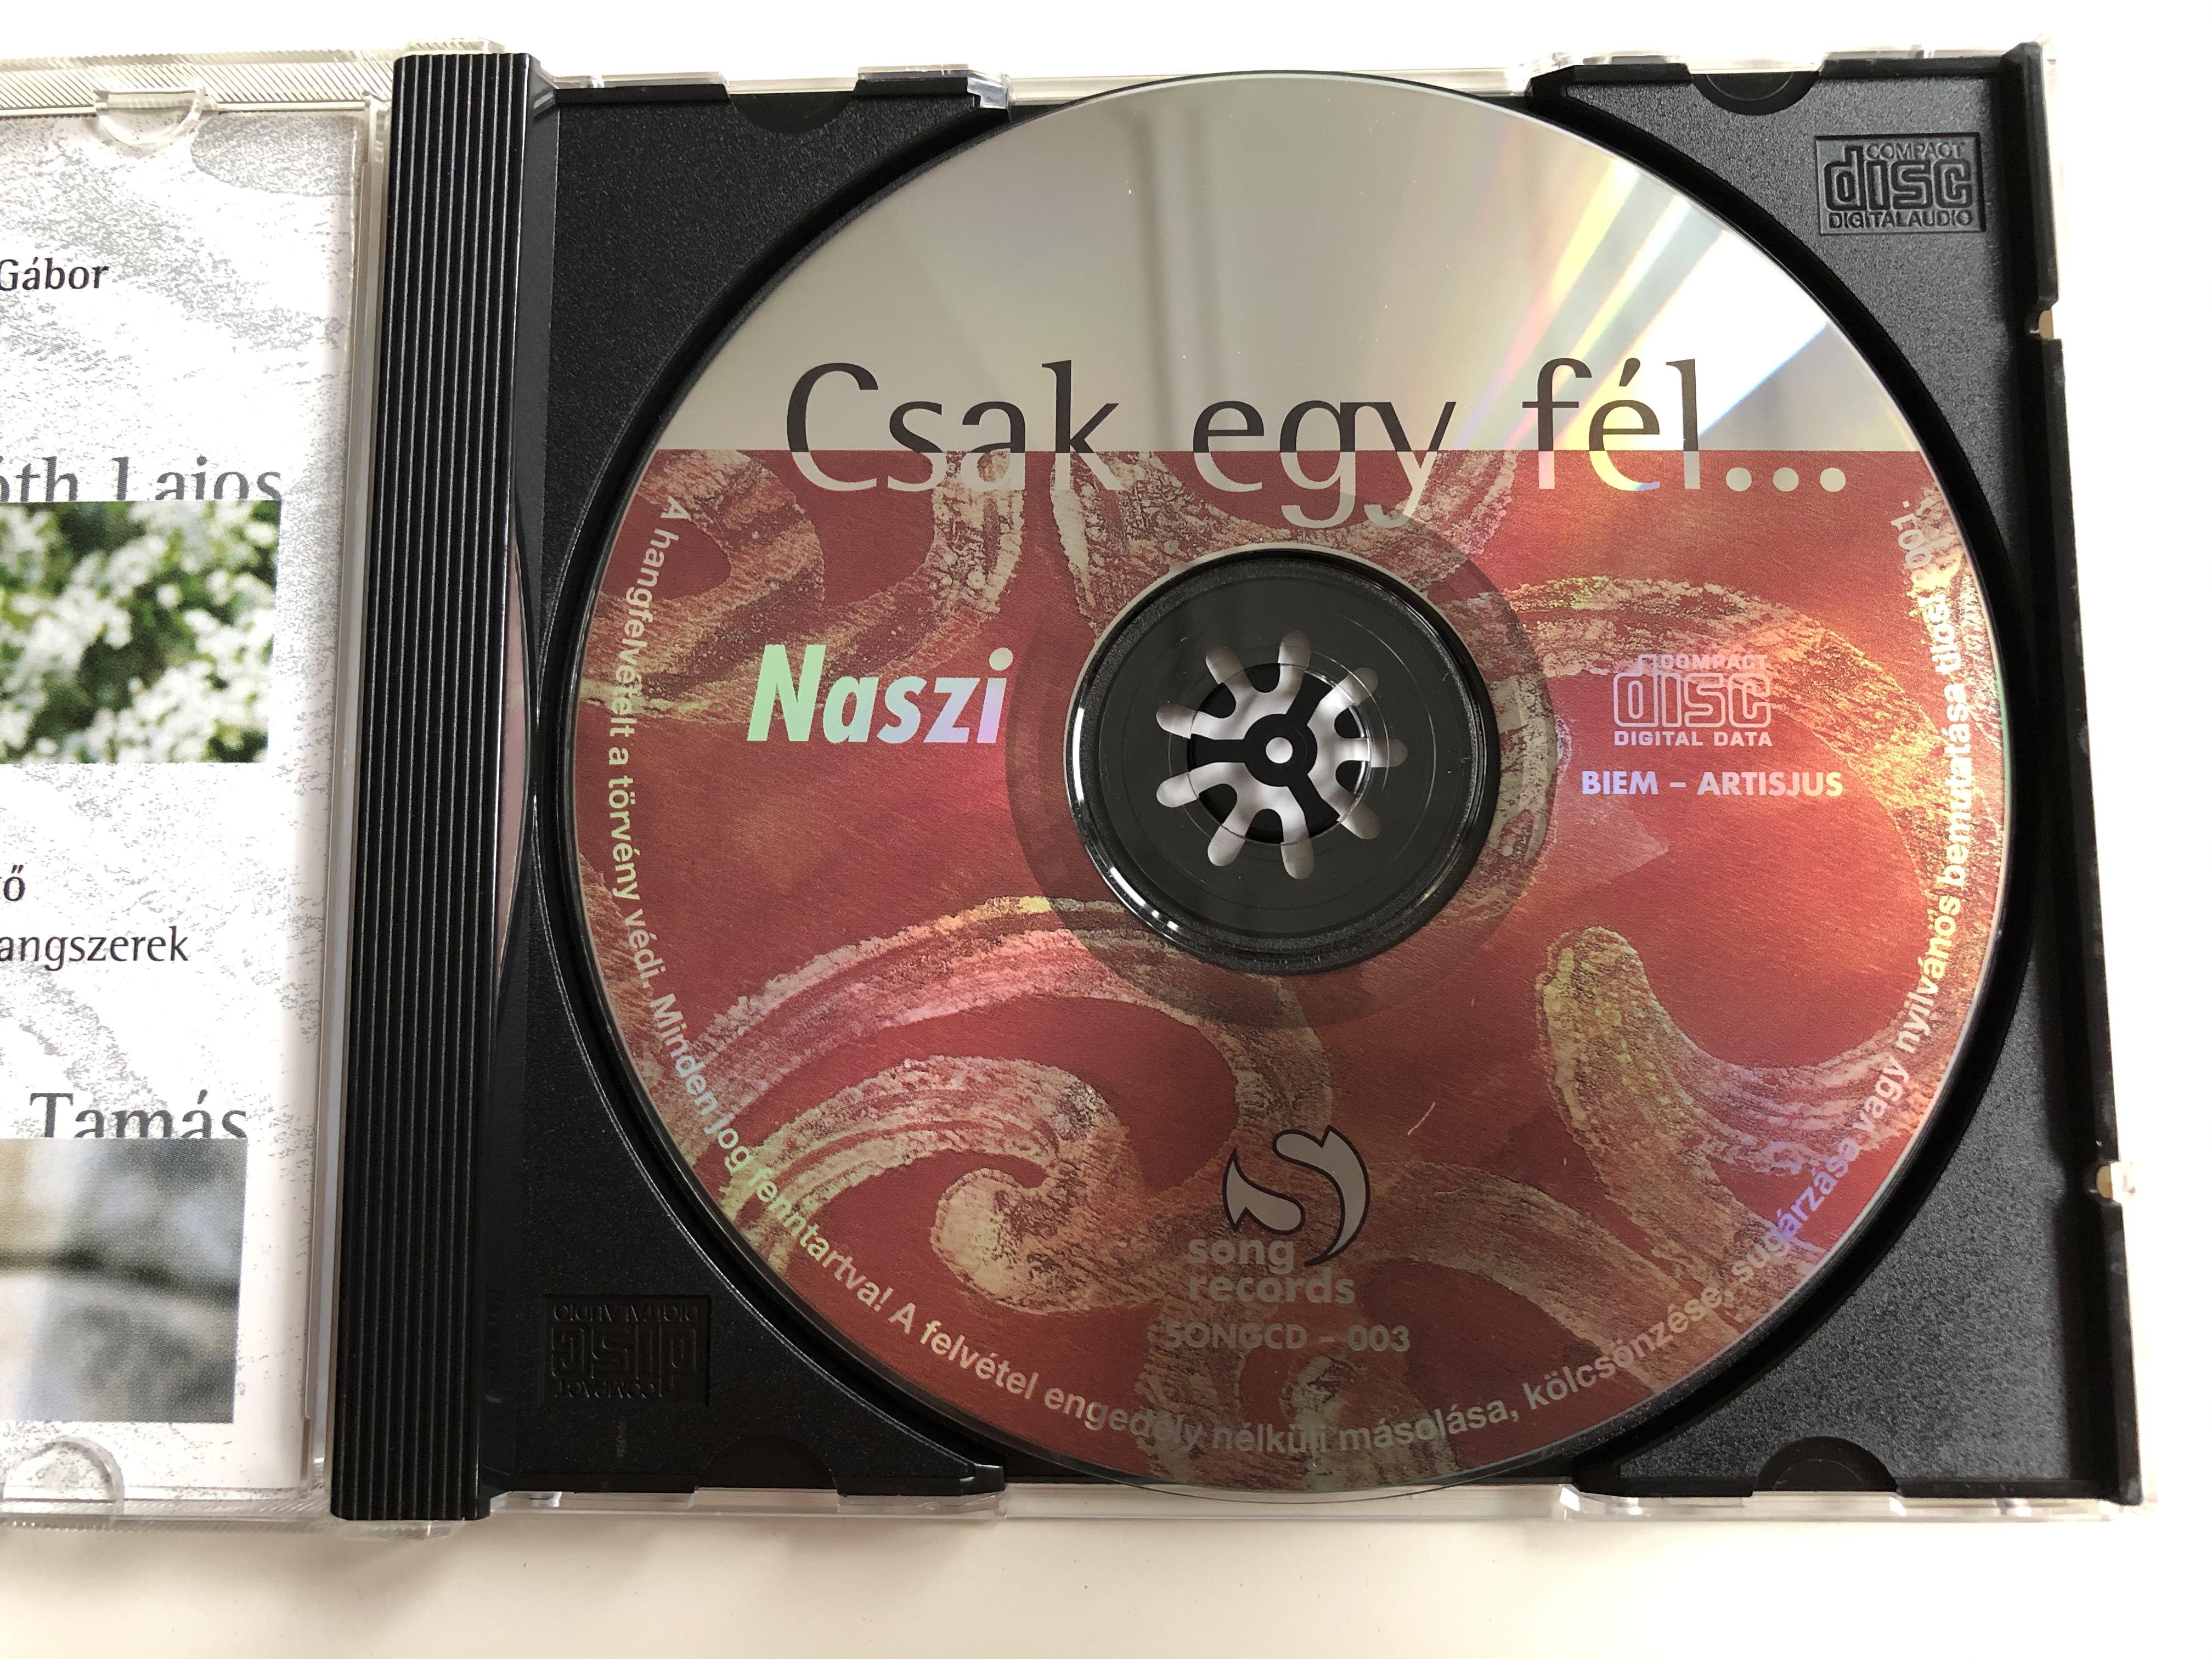 csak-egy-f-l...-naszi-song-records-audio-cd-2001-songcd-003-3-.jpg